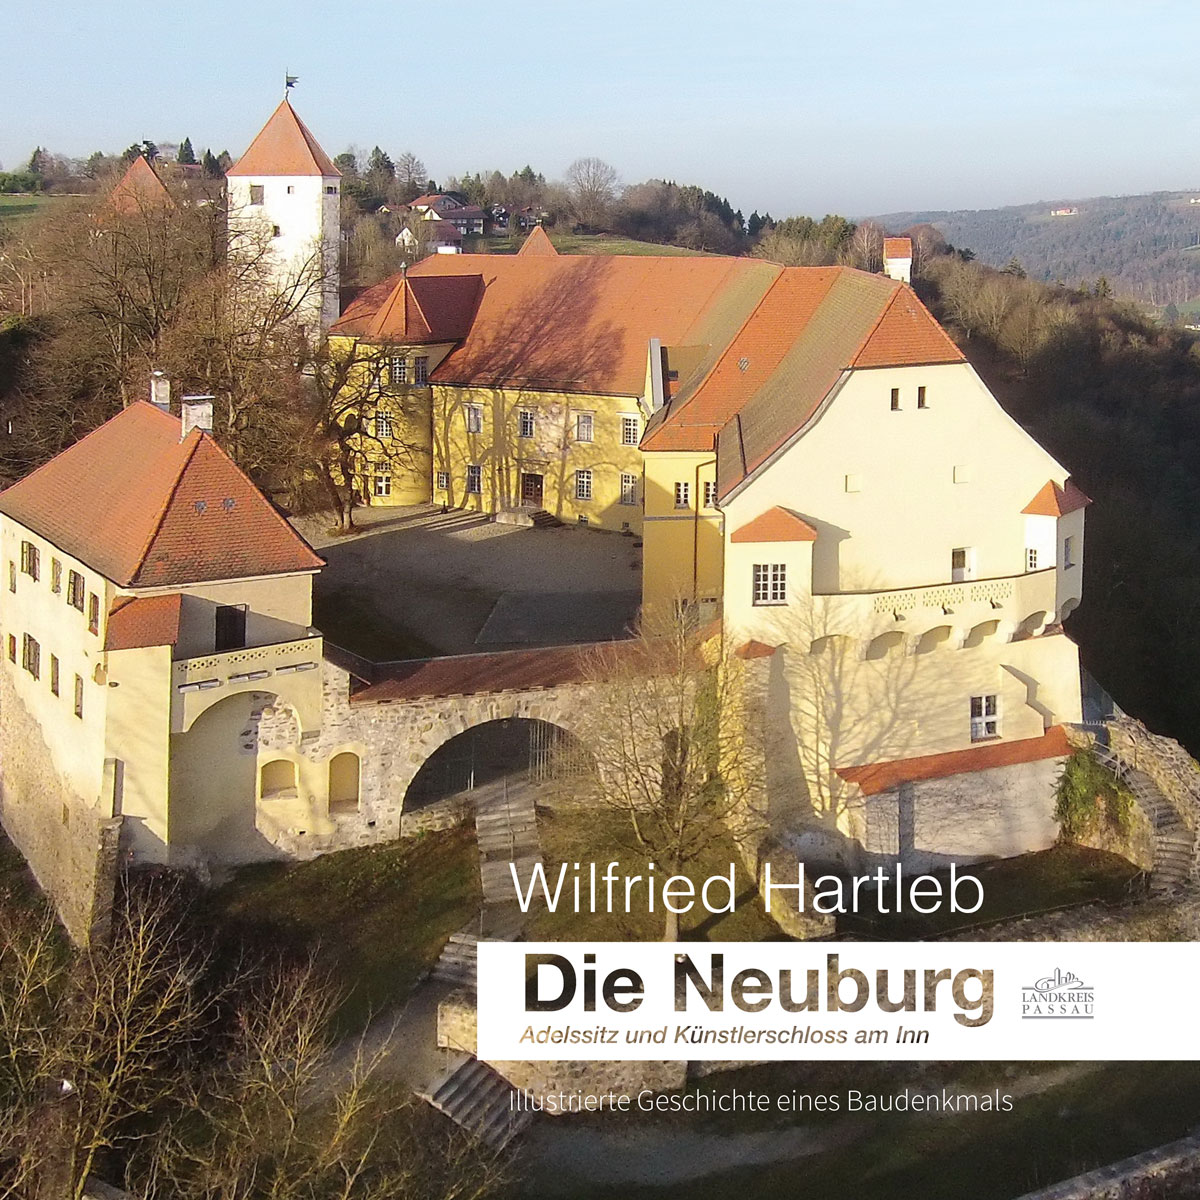 Die Neuburg – Adelssitz und Künstlerschloss am Inn Illustrierte Geschichte eines Baudenkmals